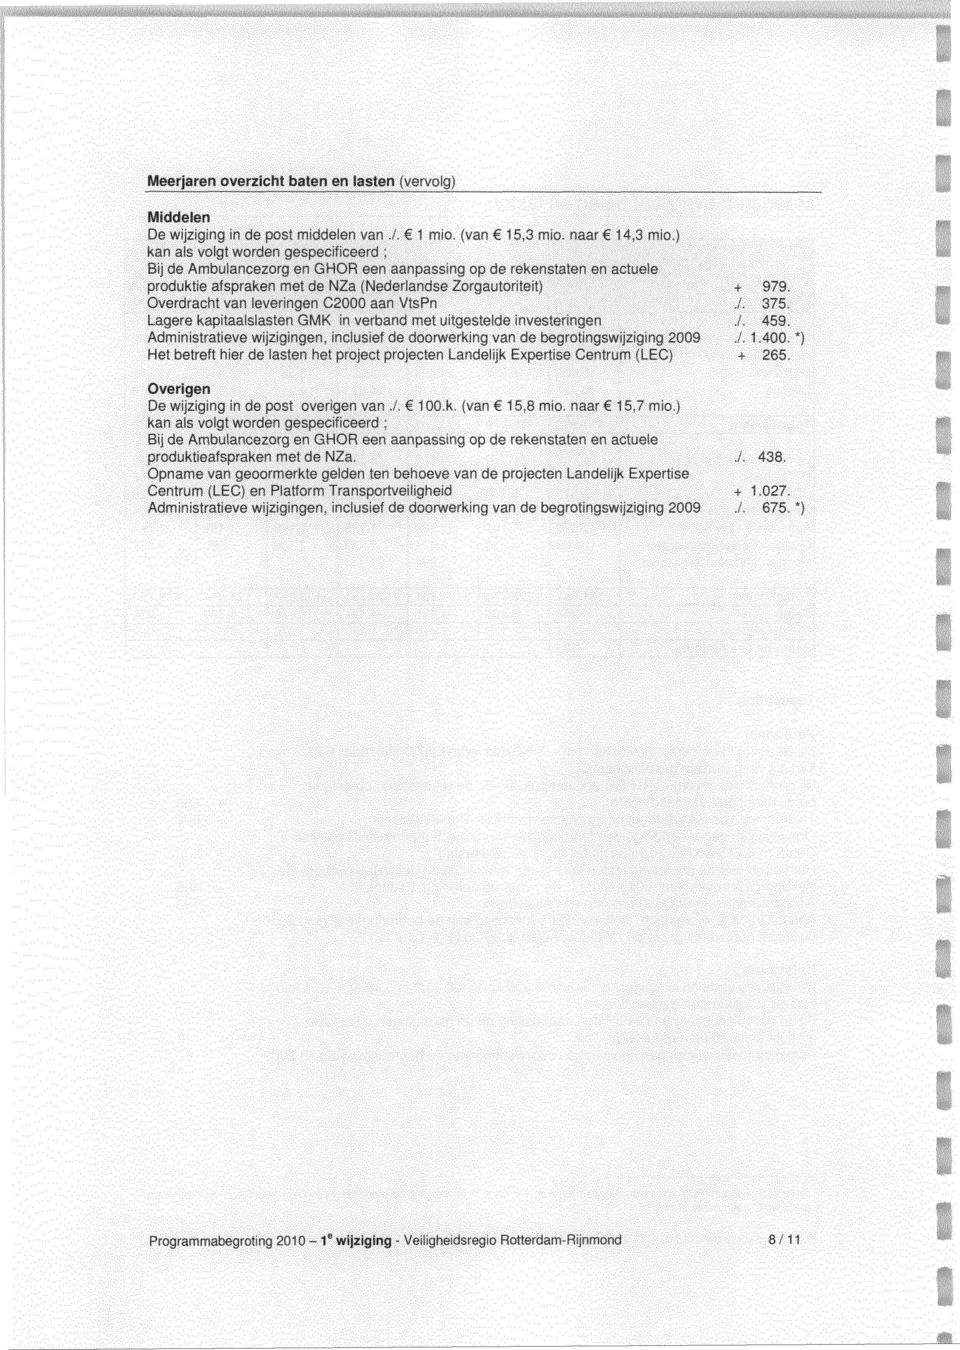 Overdracht van leveringen C2 aan VtsPn./. 375. Lagere kapitaalslasten GMK in verband met uitgestelde investeringen./. 459.